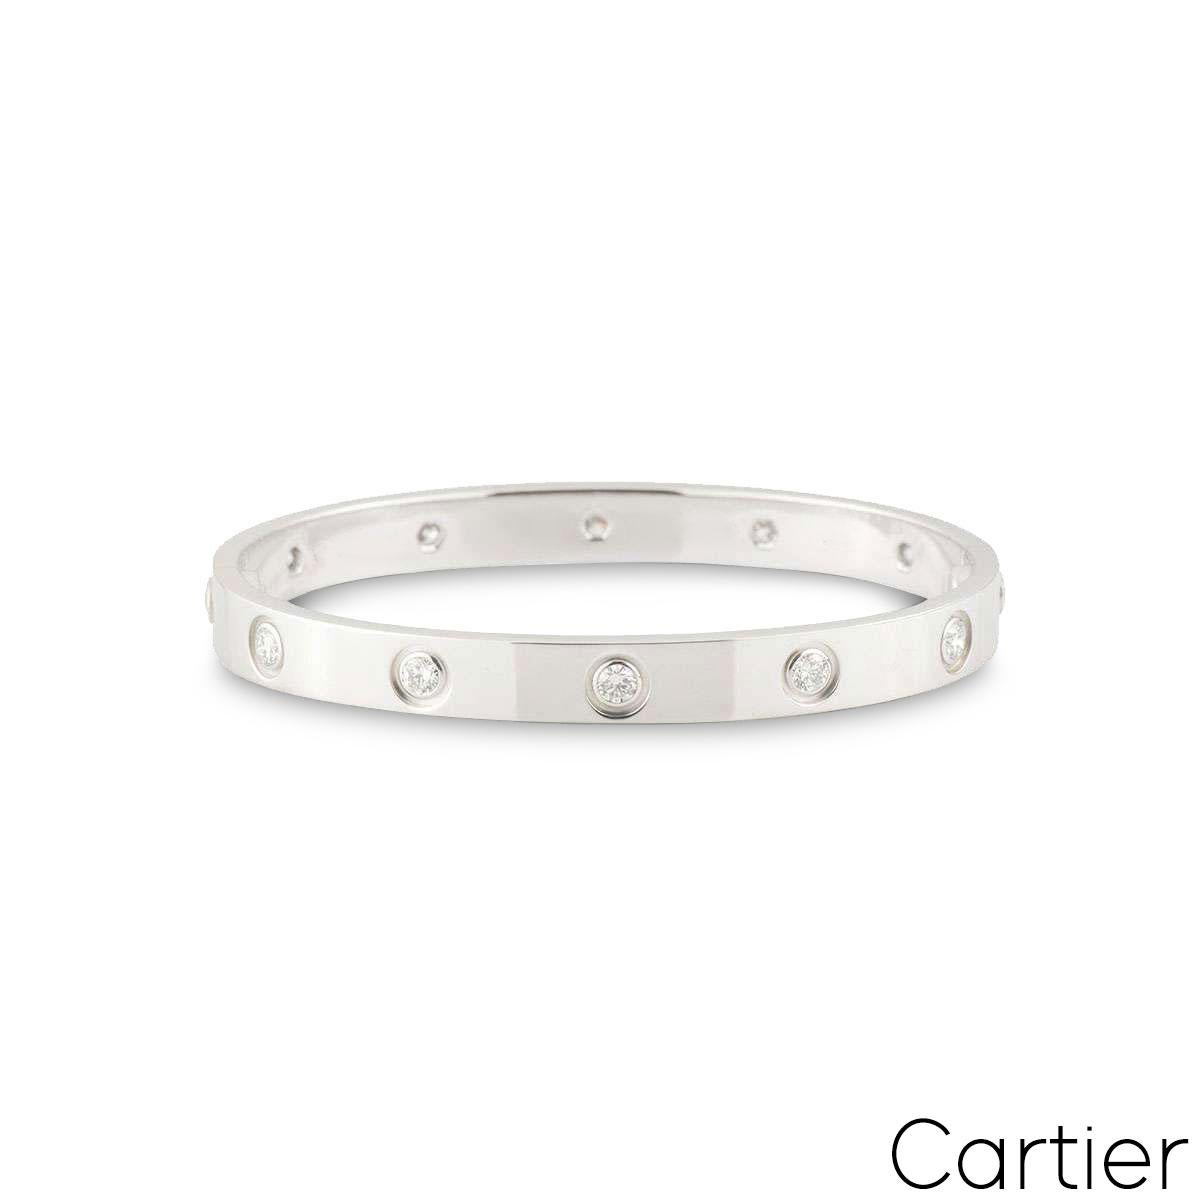 Un bracelet iconique de Cartier en or blanc 18k et plein de diamants de la collection Love. Le bracelet est serti de 10 diamants ronds de taille brillant circulant sur le bord extérieur dans un sertissage de type rubover. Le bracelet est de taille